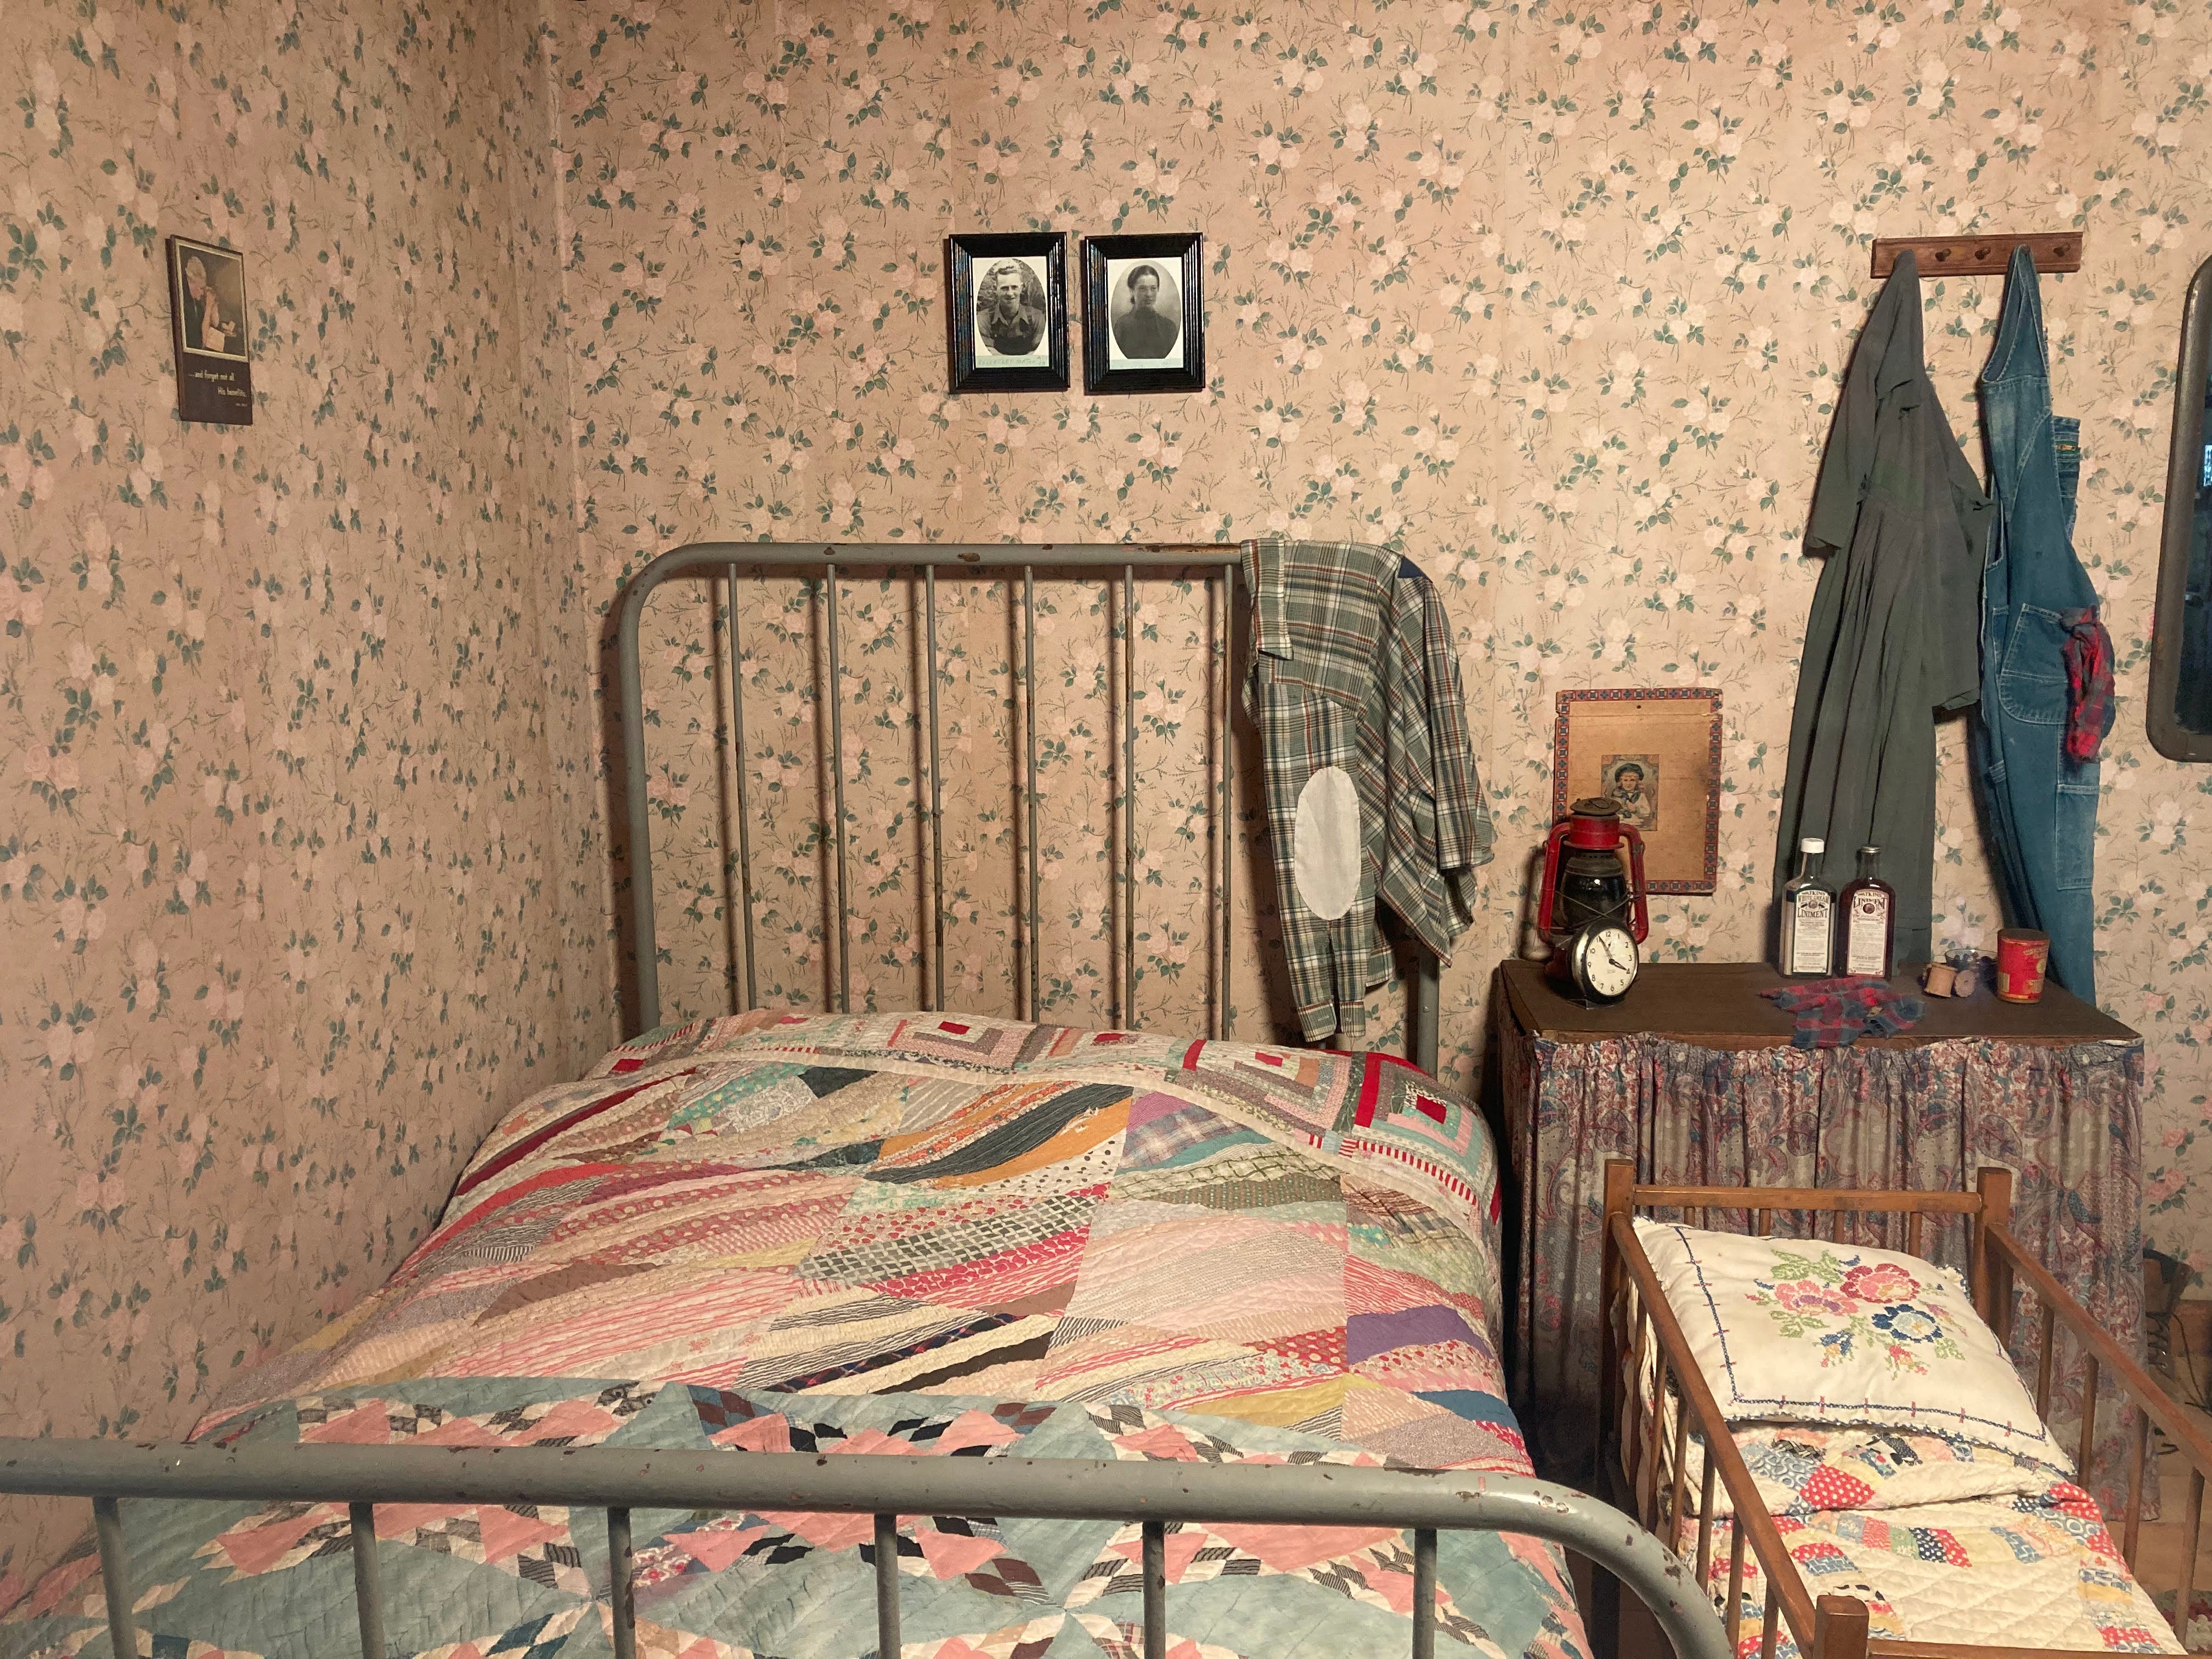 Ein Schlafbereich in einer Nachbildung von Dolly Partons Elternhaus in Dollywood.